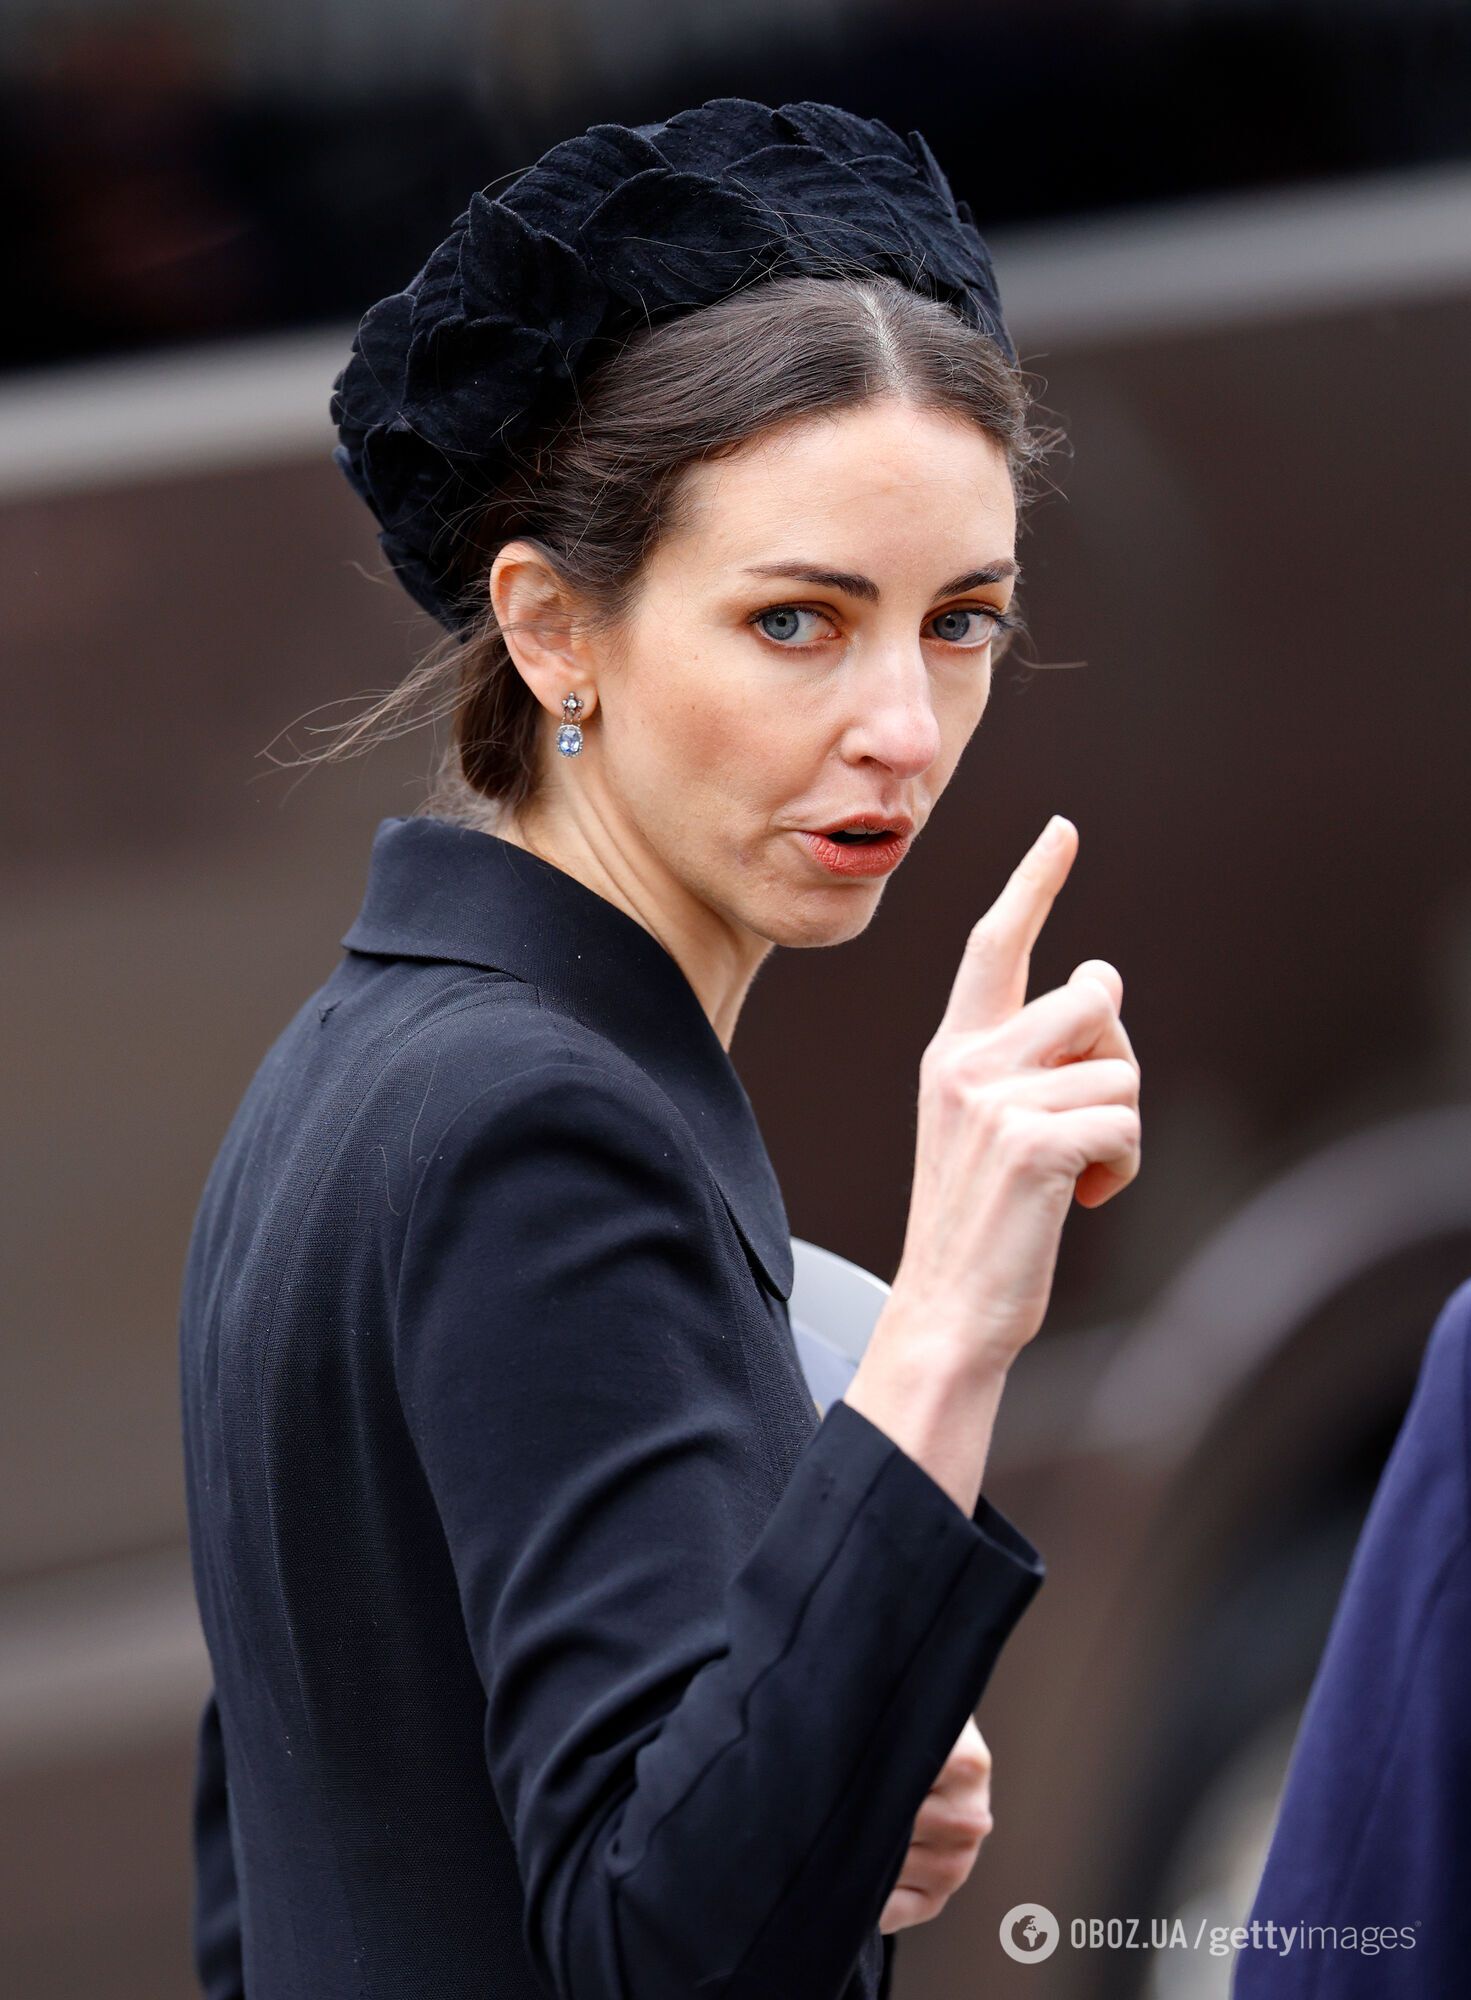 Кейт Міддлтон вперше помітили на вулиці після чуток про зраду принца Вільяма і проблем зі здоров'ям
